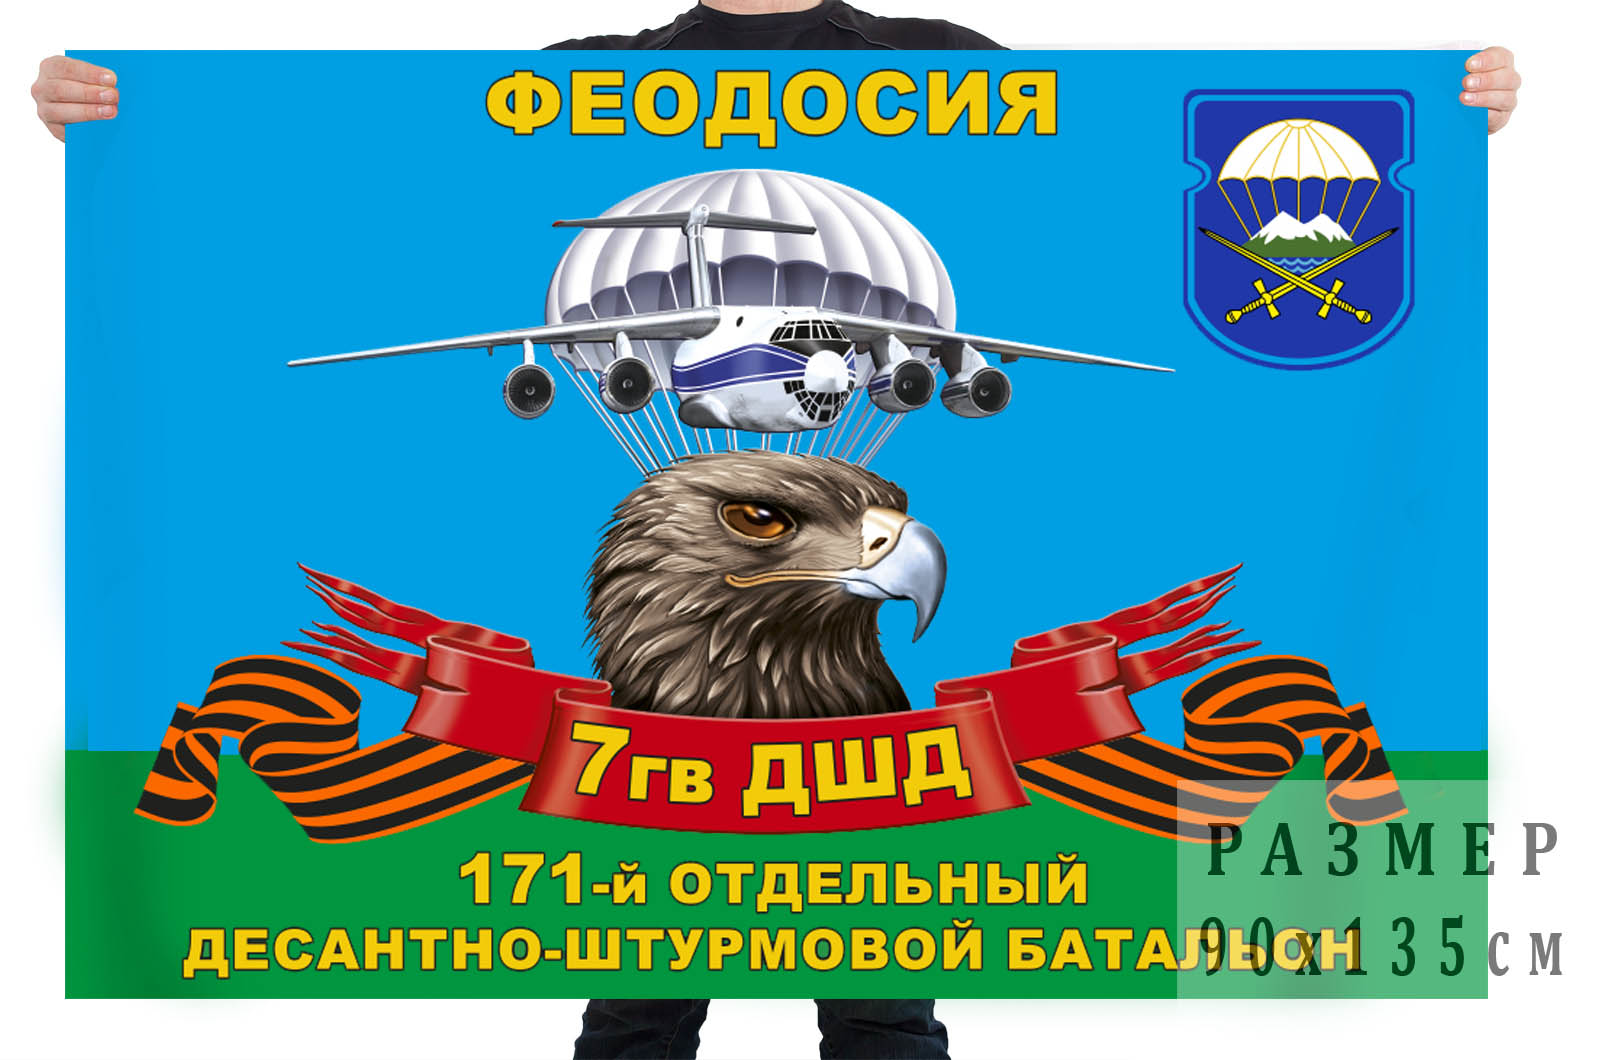 Флаг 171 отдельного десантно-штурмового батальона 7 гв. ДШД